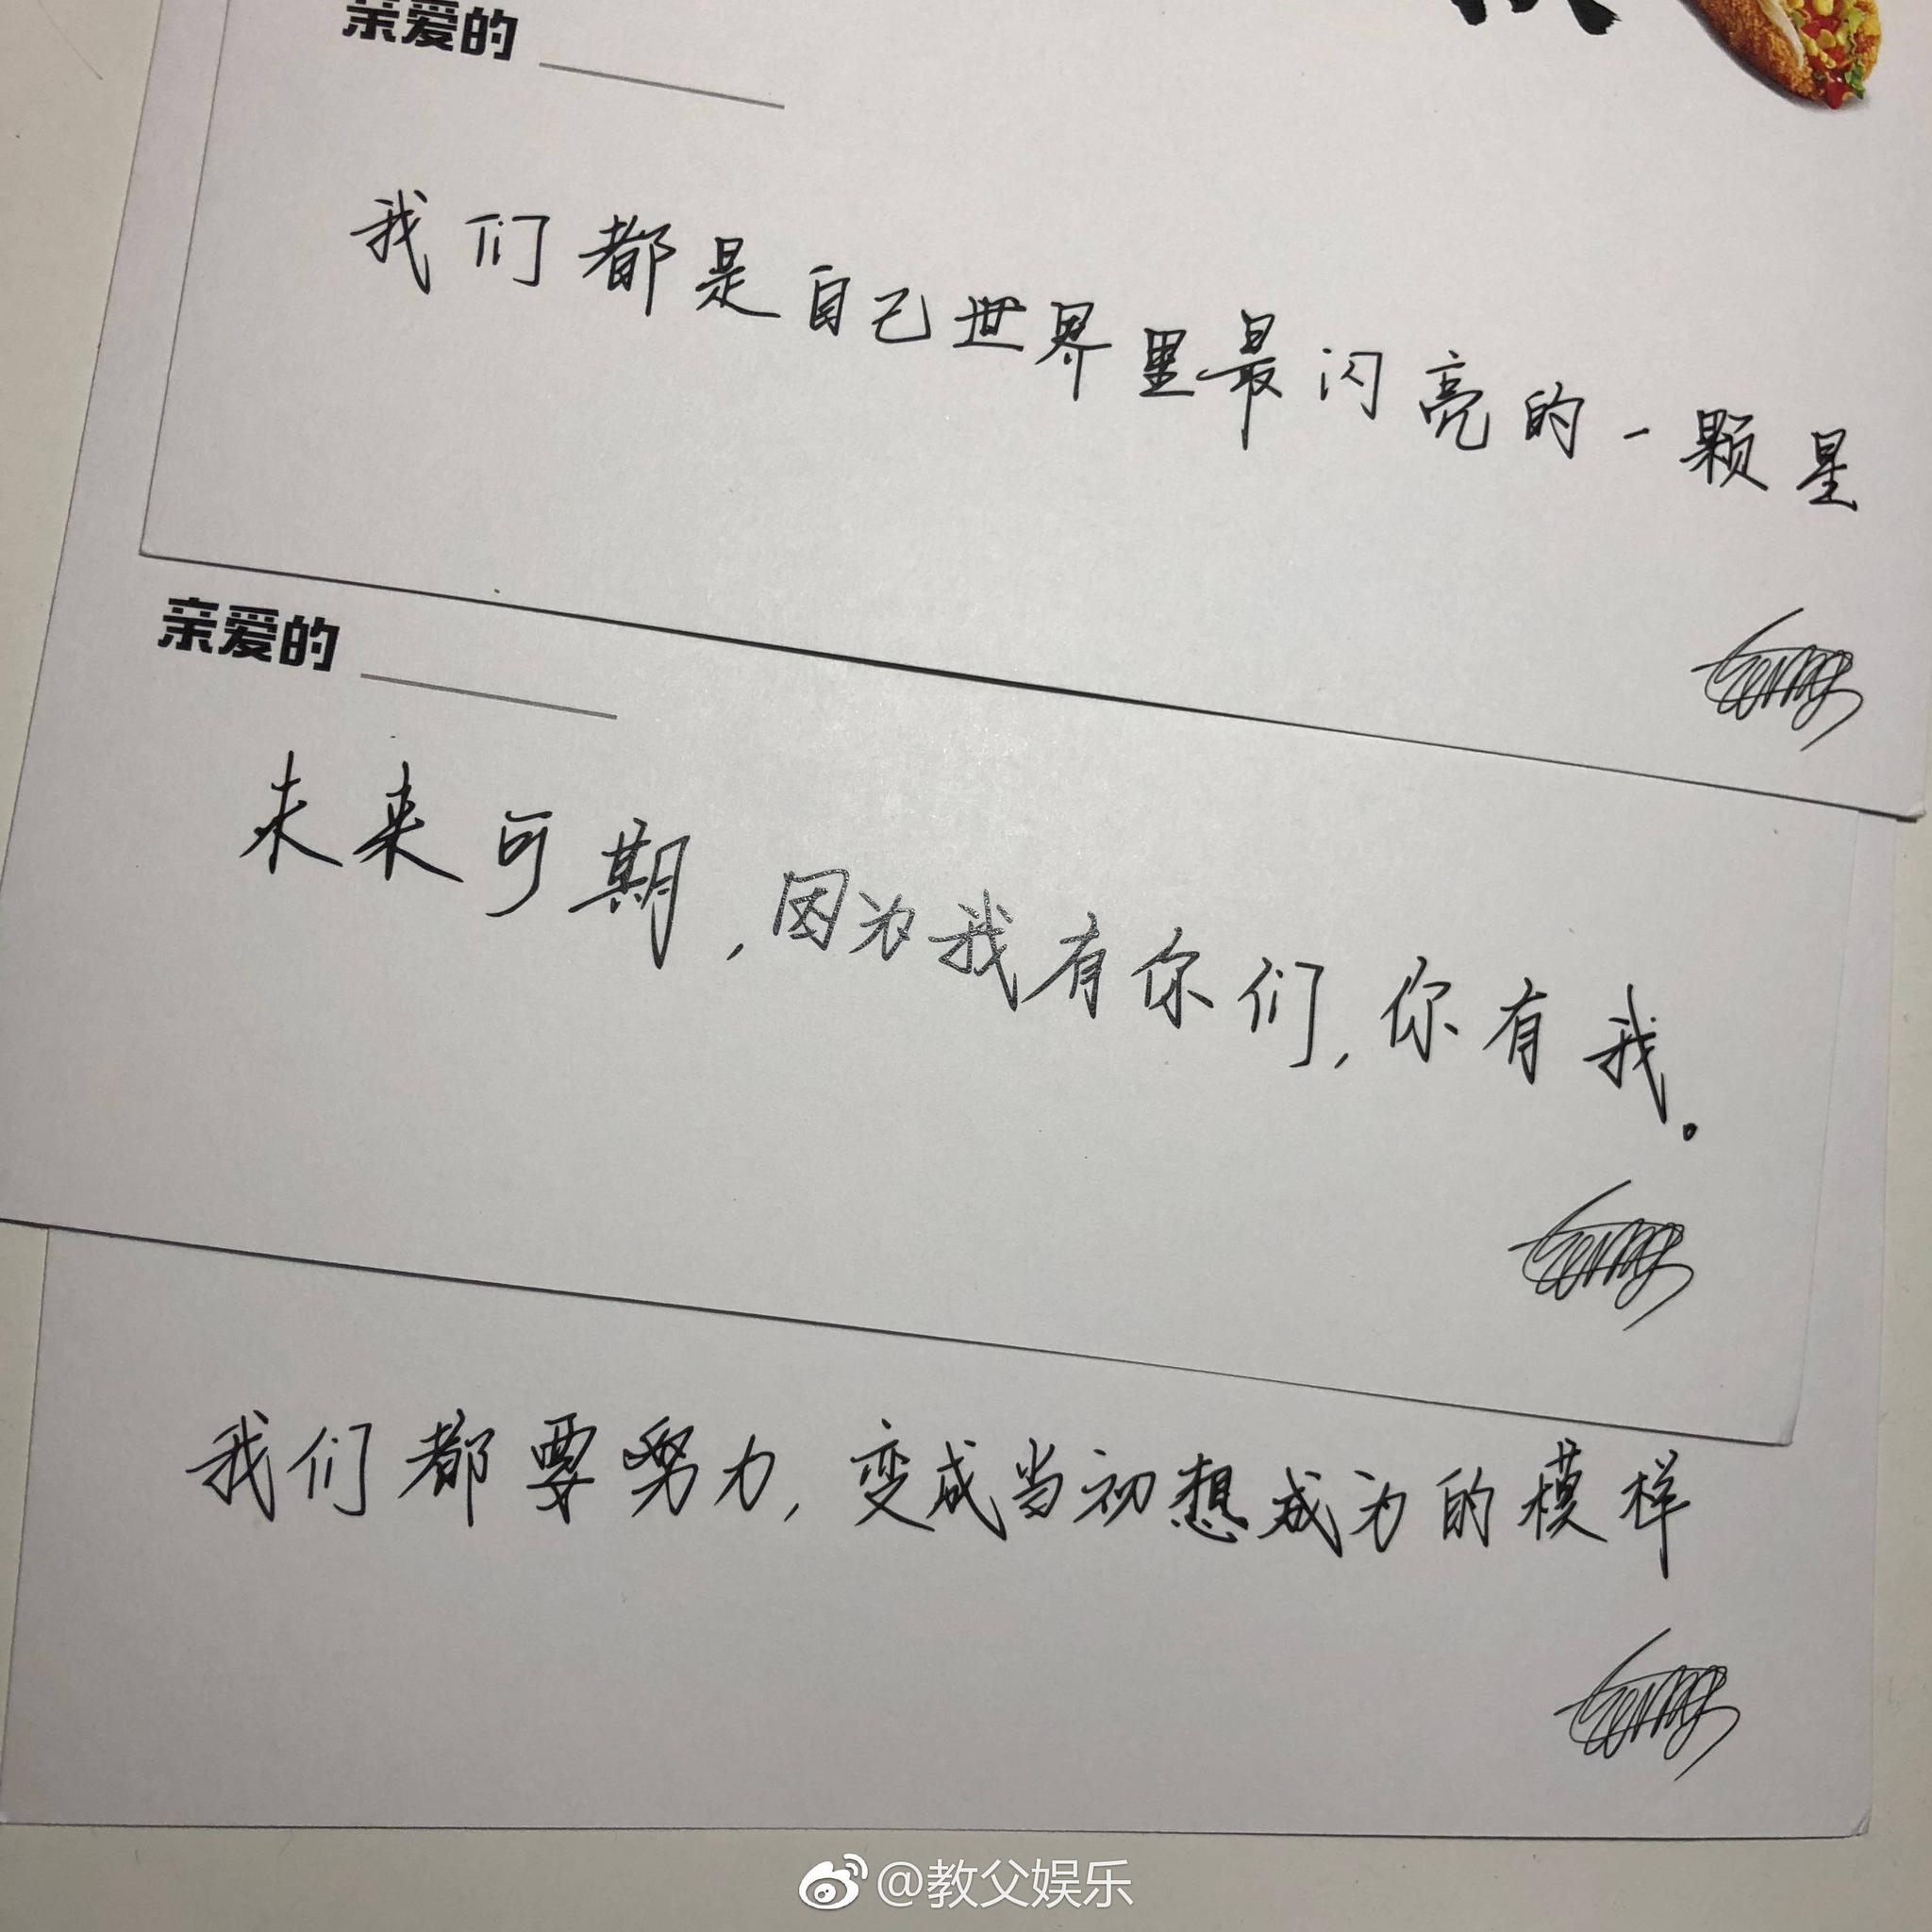 王源手写情话卡片,不仅写了"你今天漂亮的不像话",还有更甜的